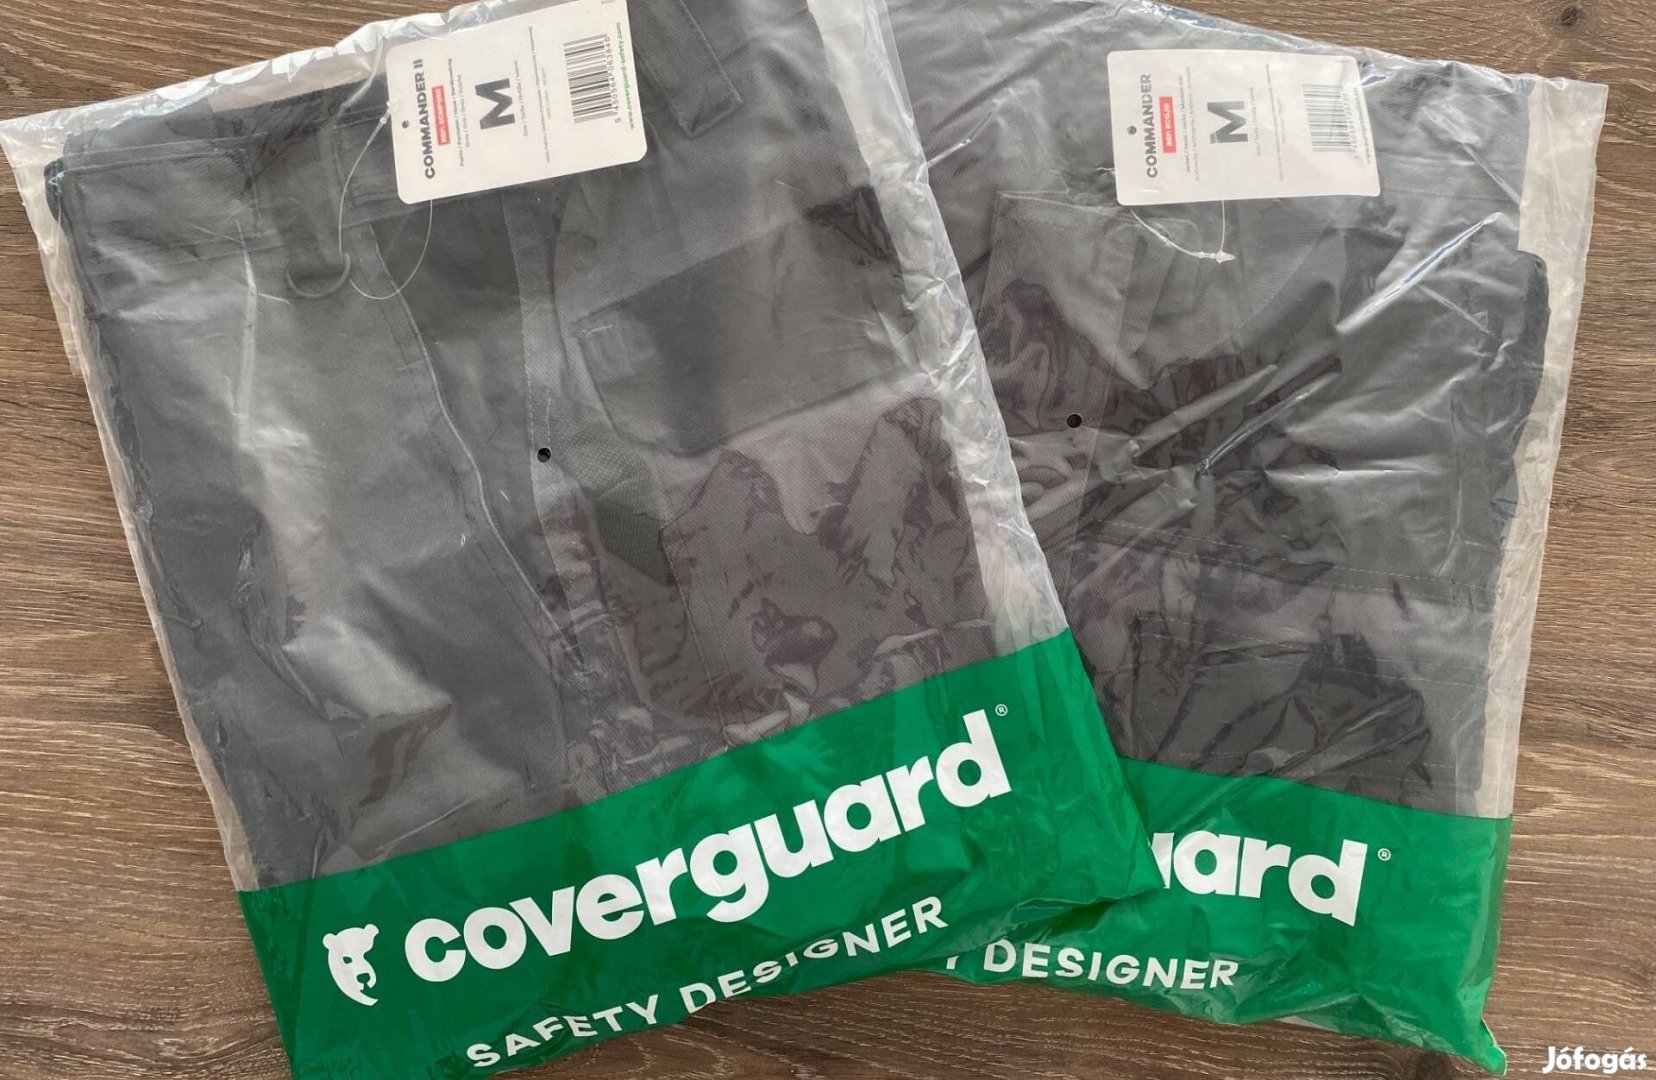 M méretű Coverguard márkájú munkaruha eladó